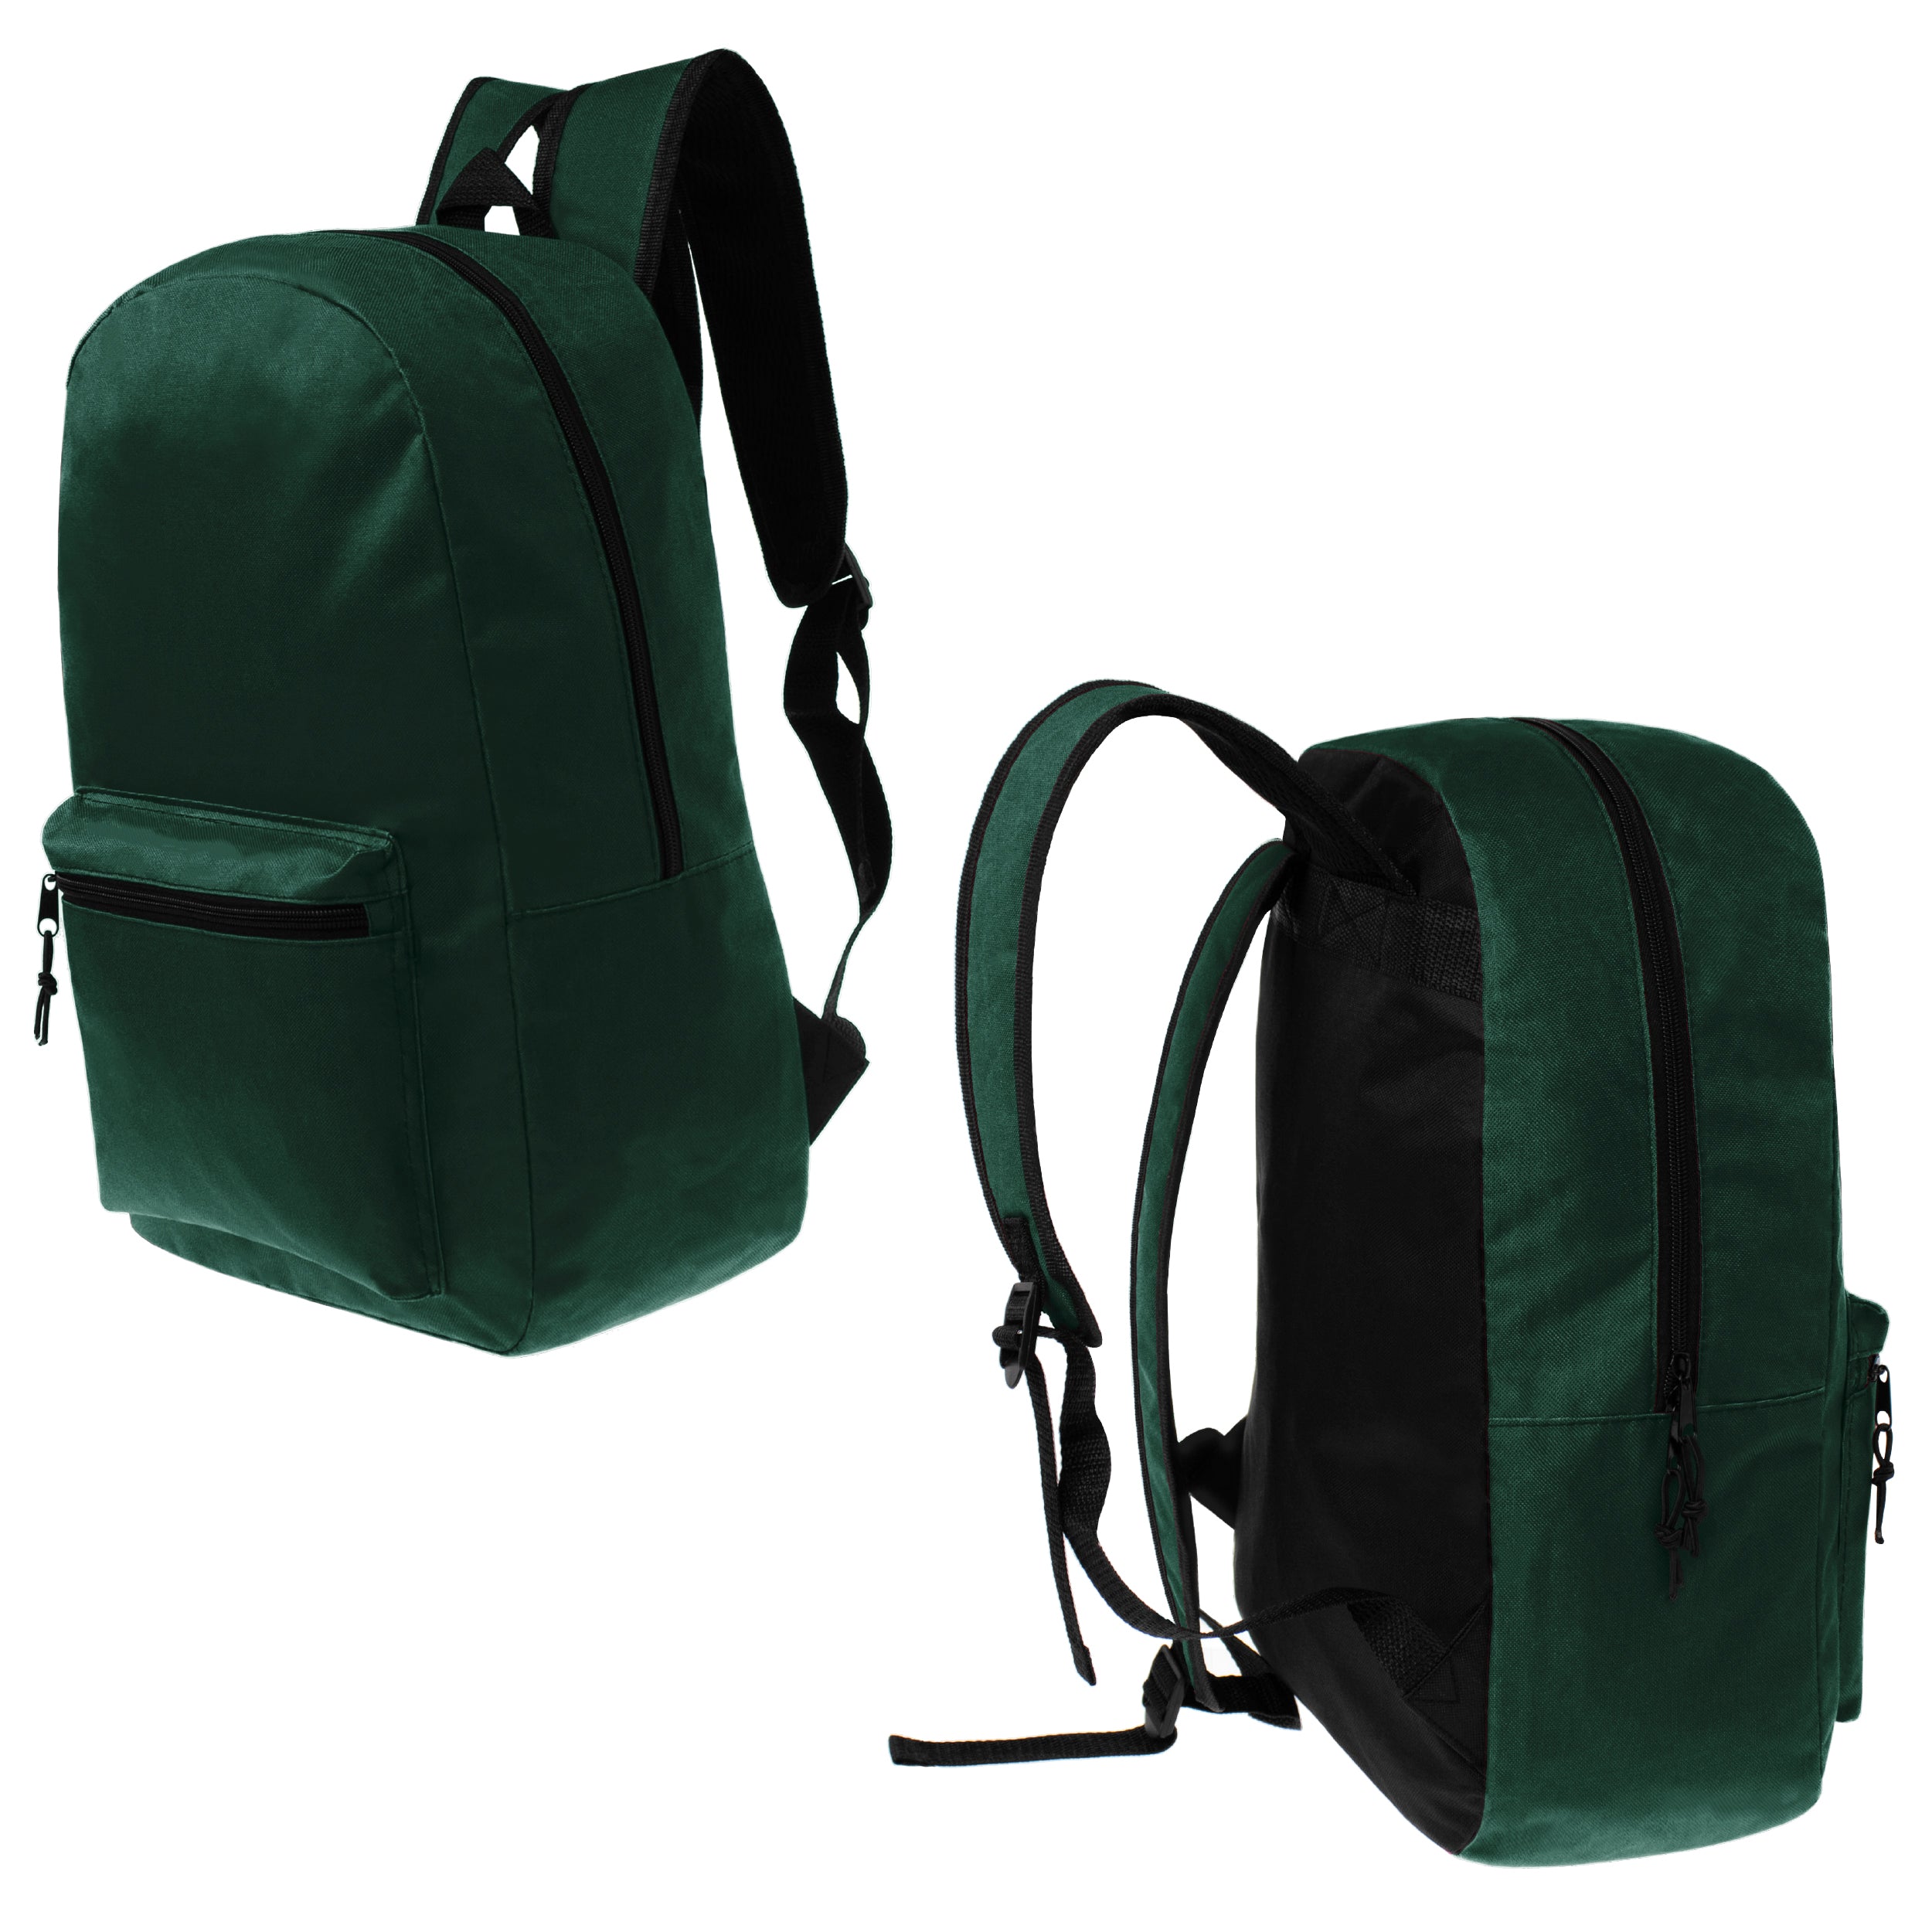 17" Kids Basic Wholesale Backpack in Dark Green- Bulk Case of 24 Backpacks